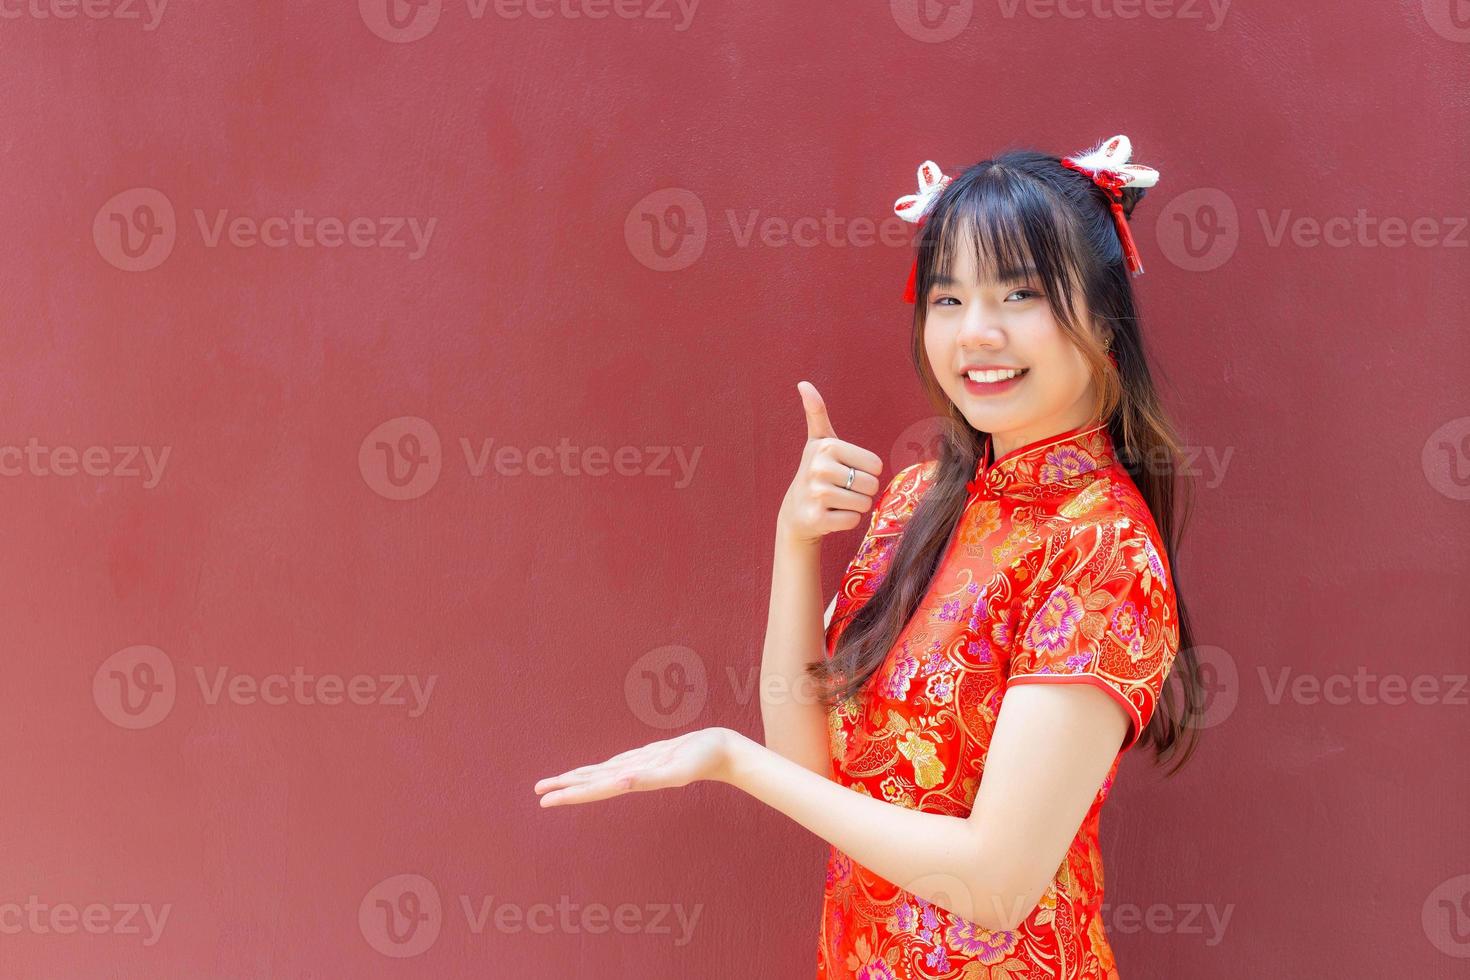 süßes asiatisches mädchen mit langen haaren, das ein rotes cheongsam-kleid im chinesischen neujahrsthema trägt, während sie ihre hand zeigt, um etwas auf rotem hintergrund zu präsentieren. foto